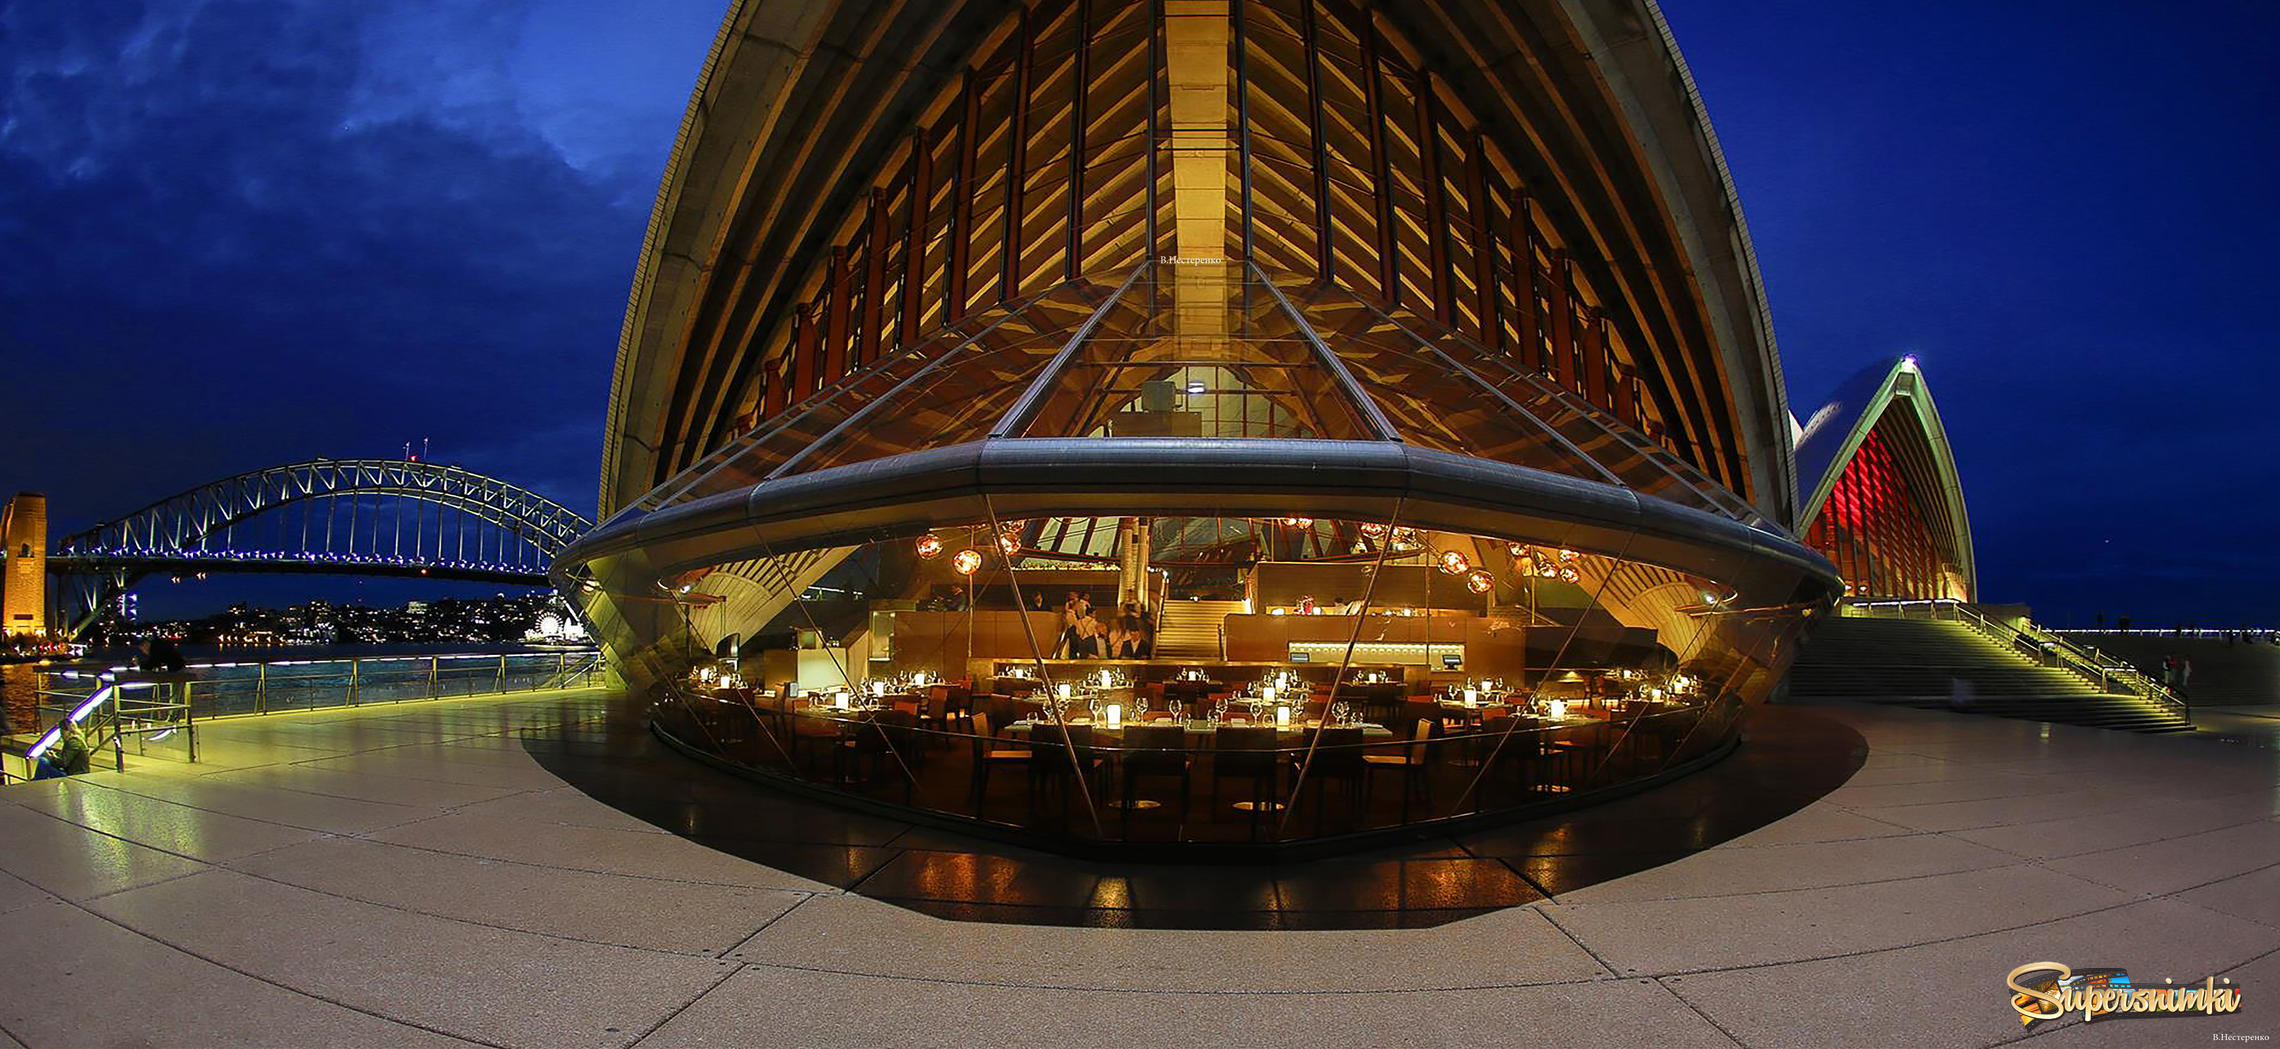 Ресторан Сиднейской оперы